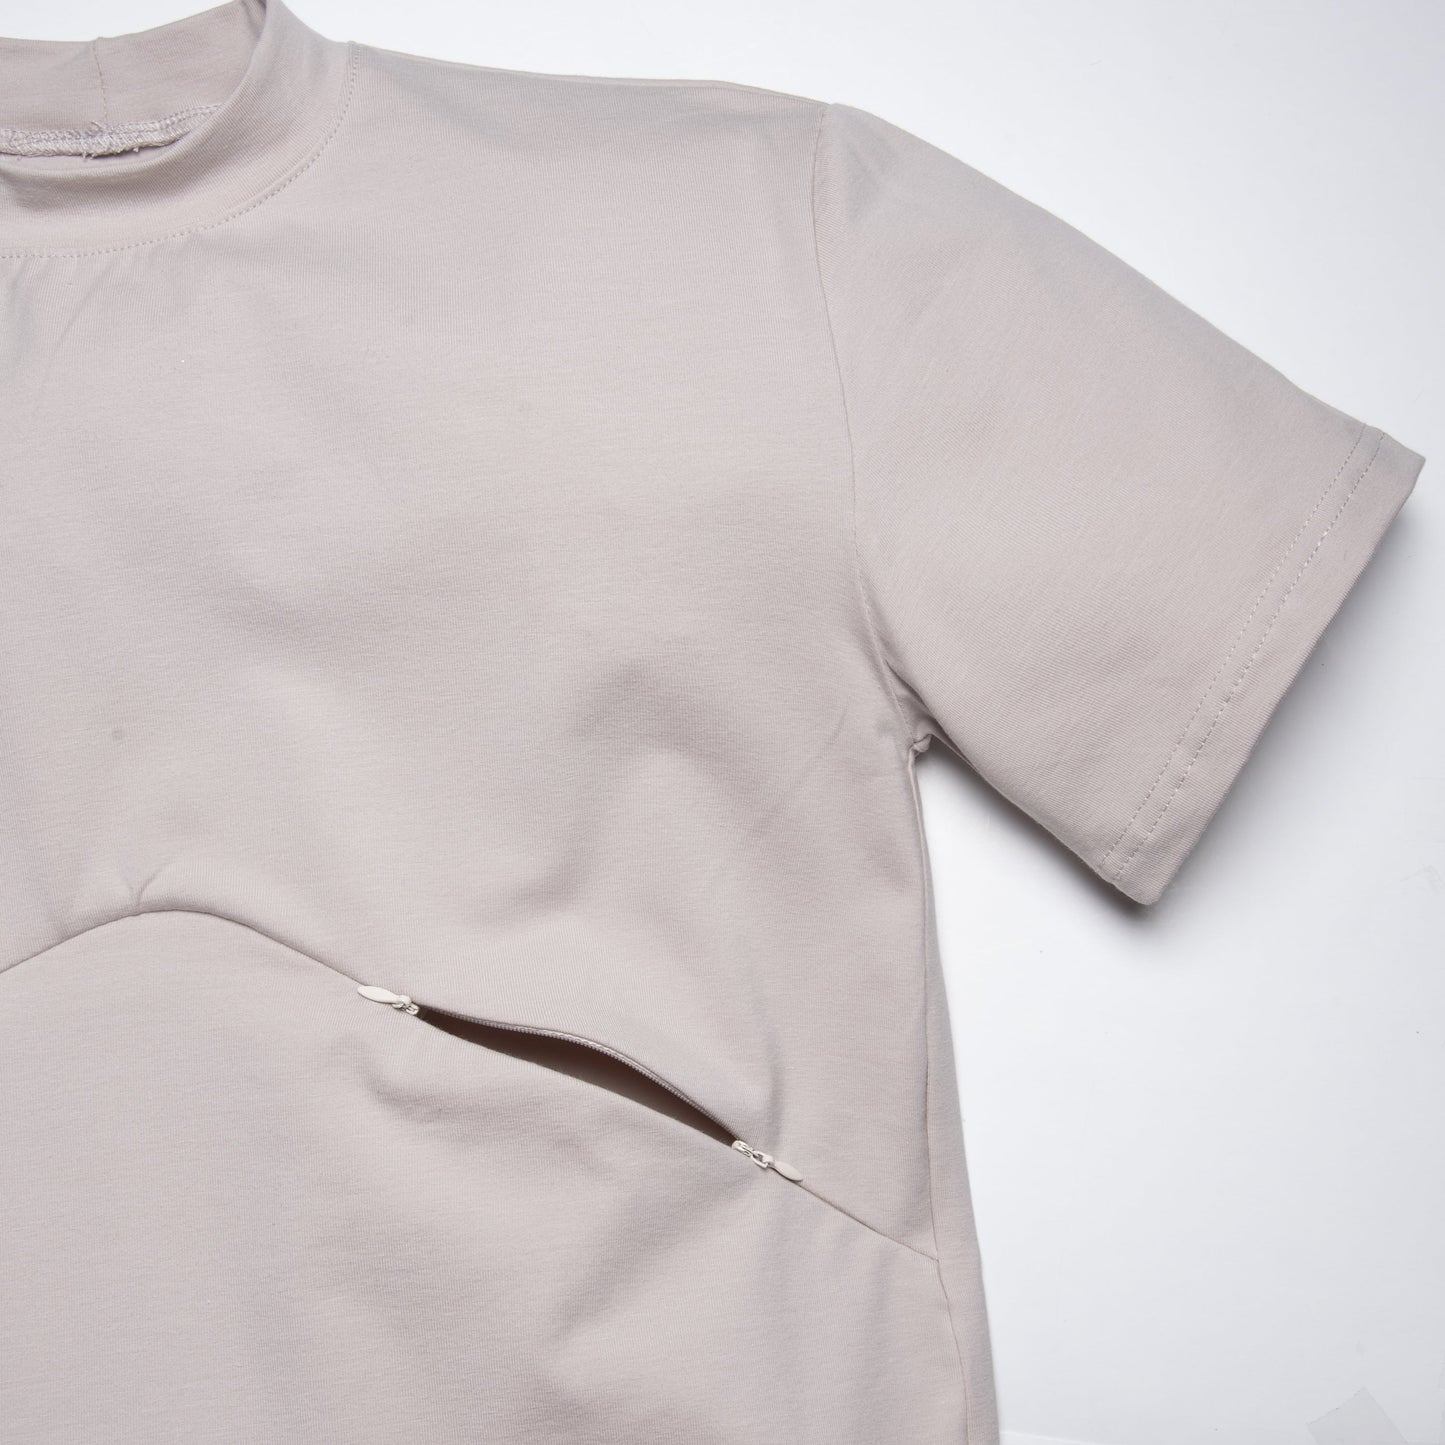 SMALL - SABLE t-shirt maternité, allaitement, grossesse coupe boyfriend - Léger défaut ( réf #531 )